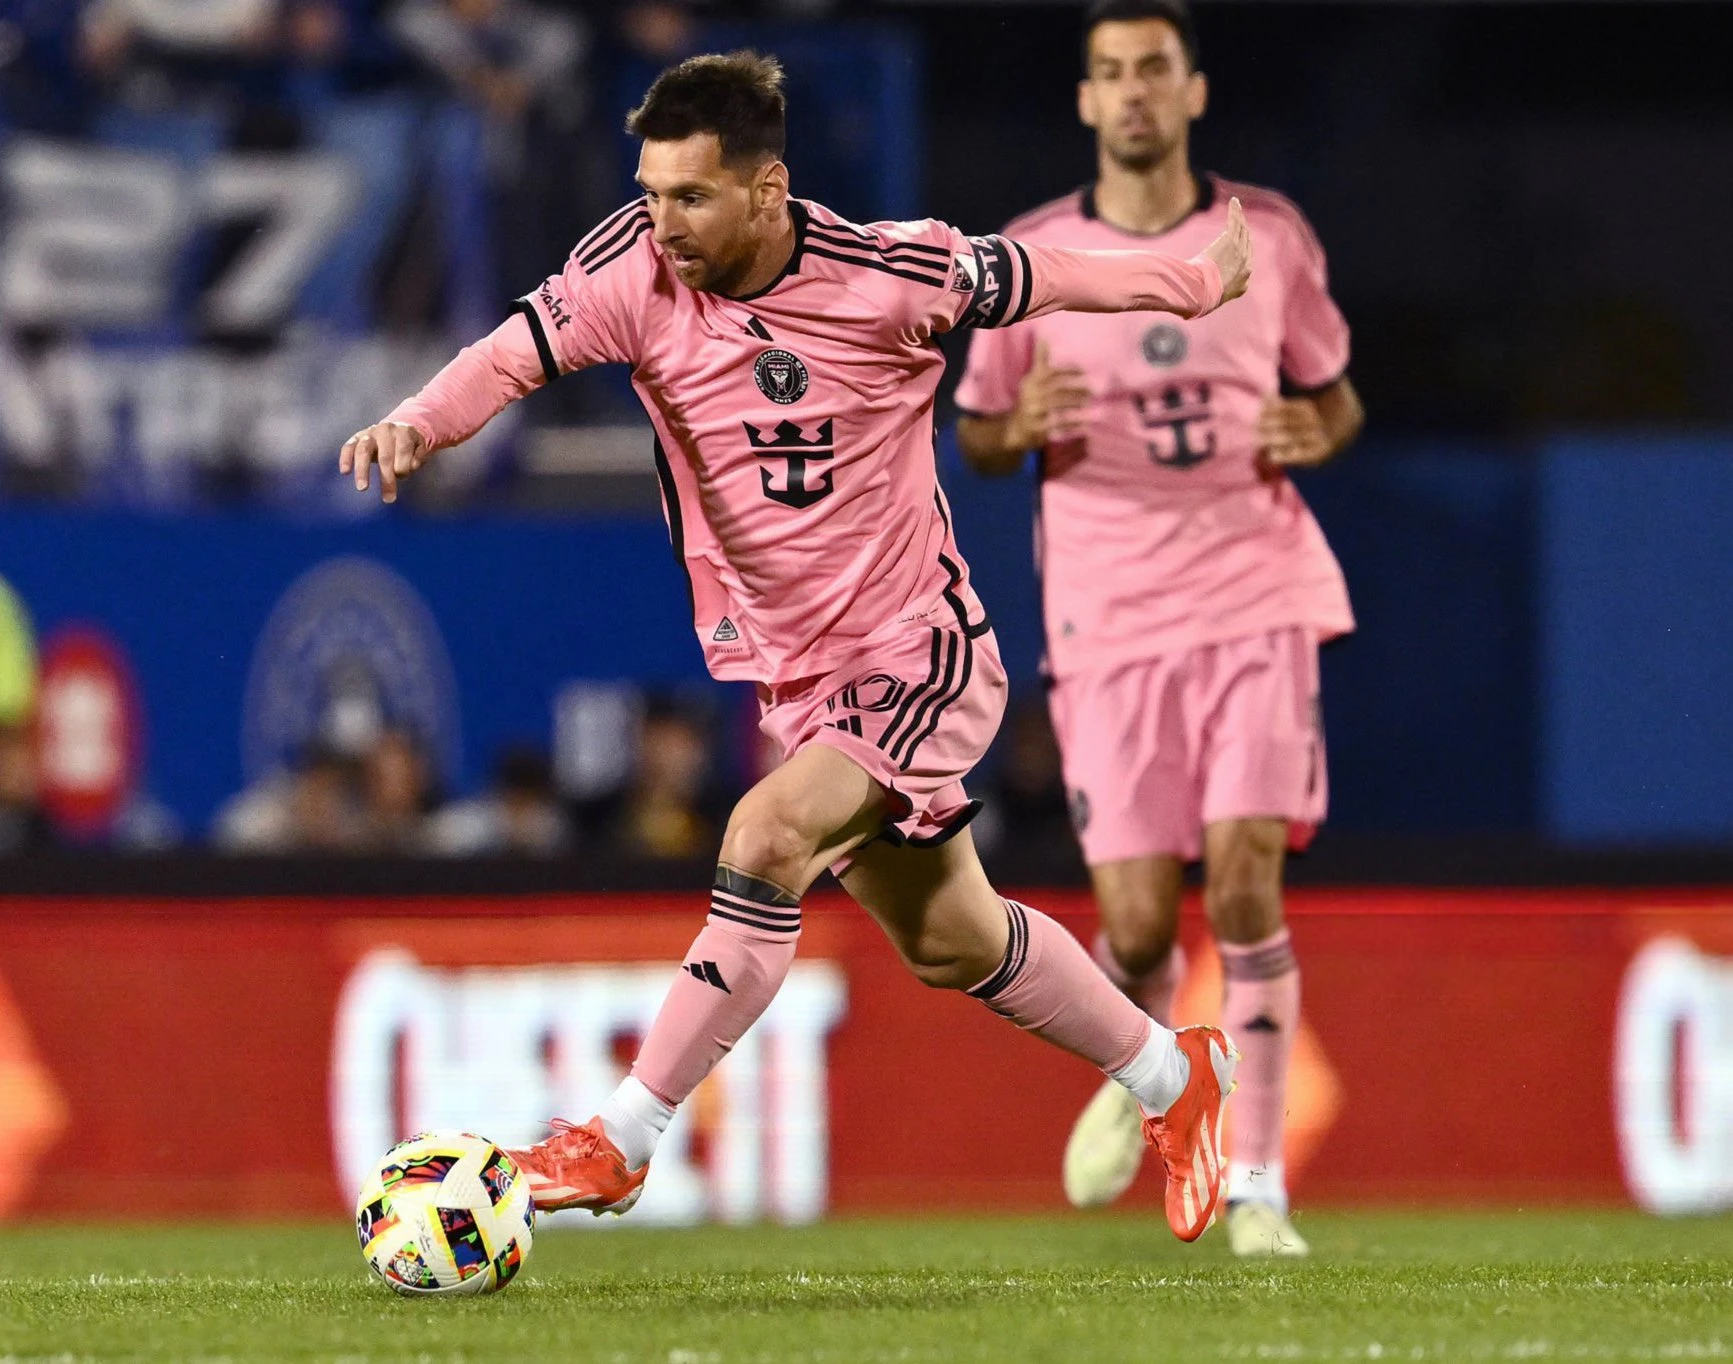 Messi và Suarez đối đầu ‘hàng khủng’, loạt sao châu Âu sắp đến giải MLS